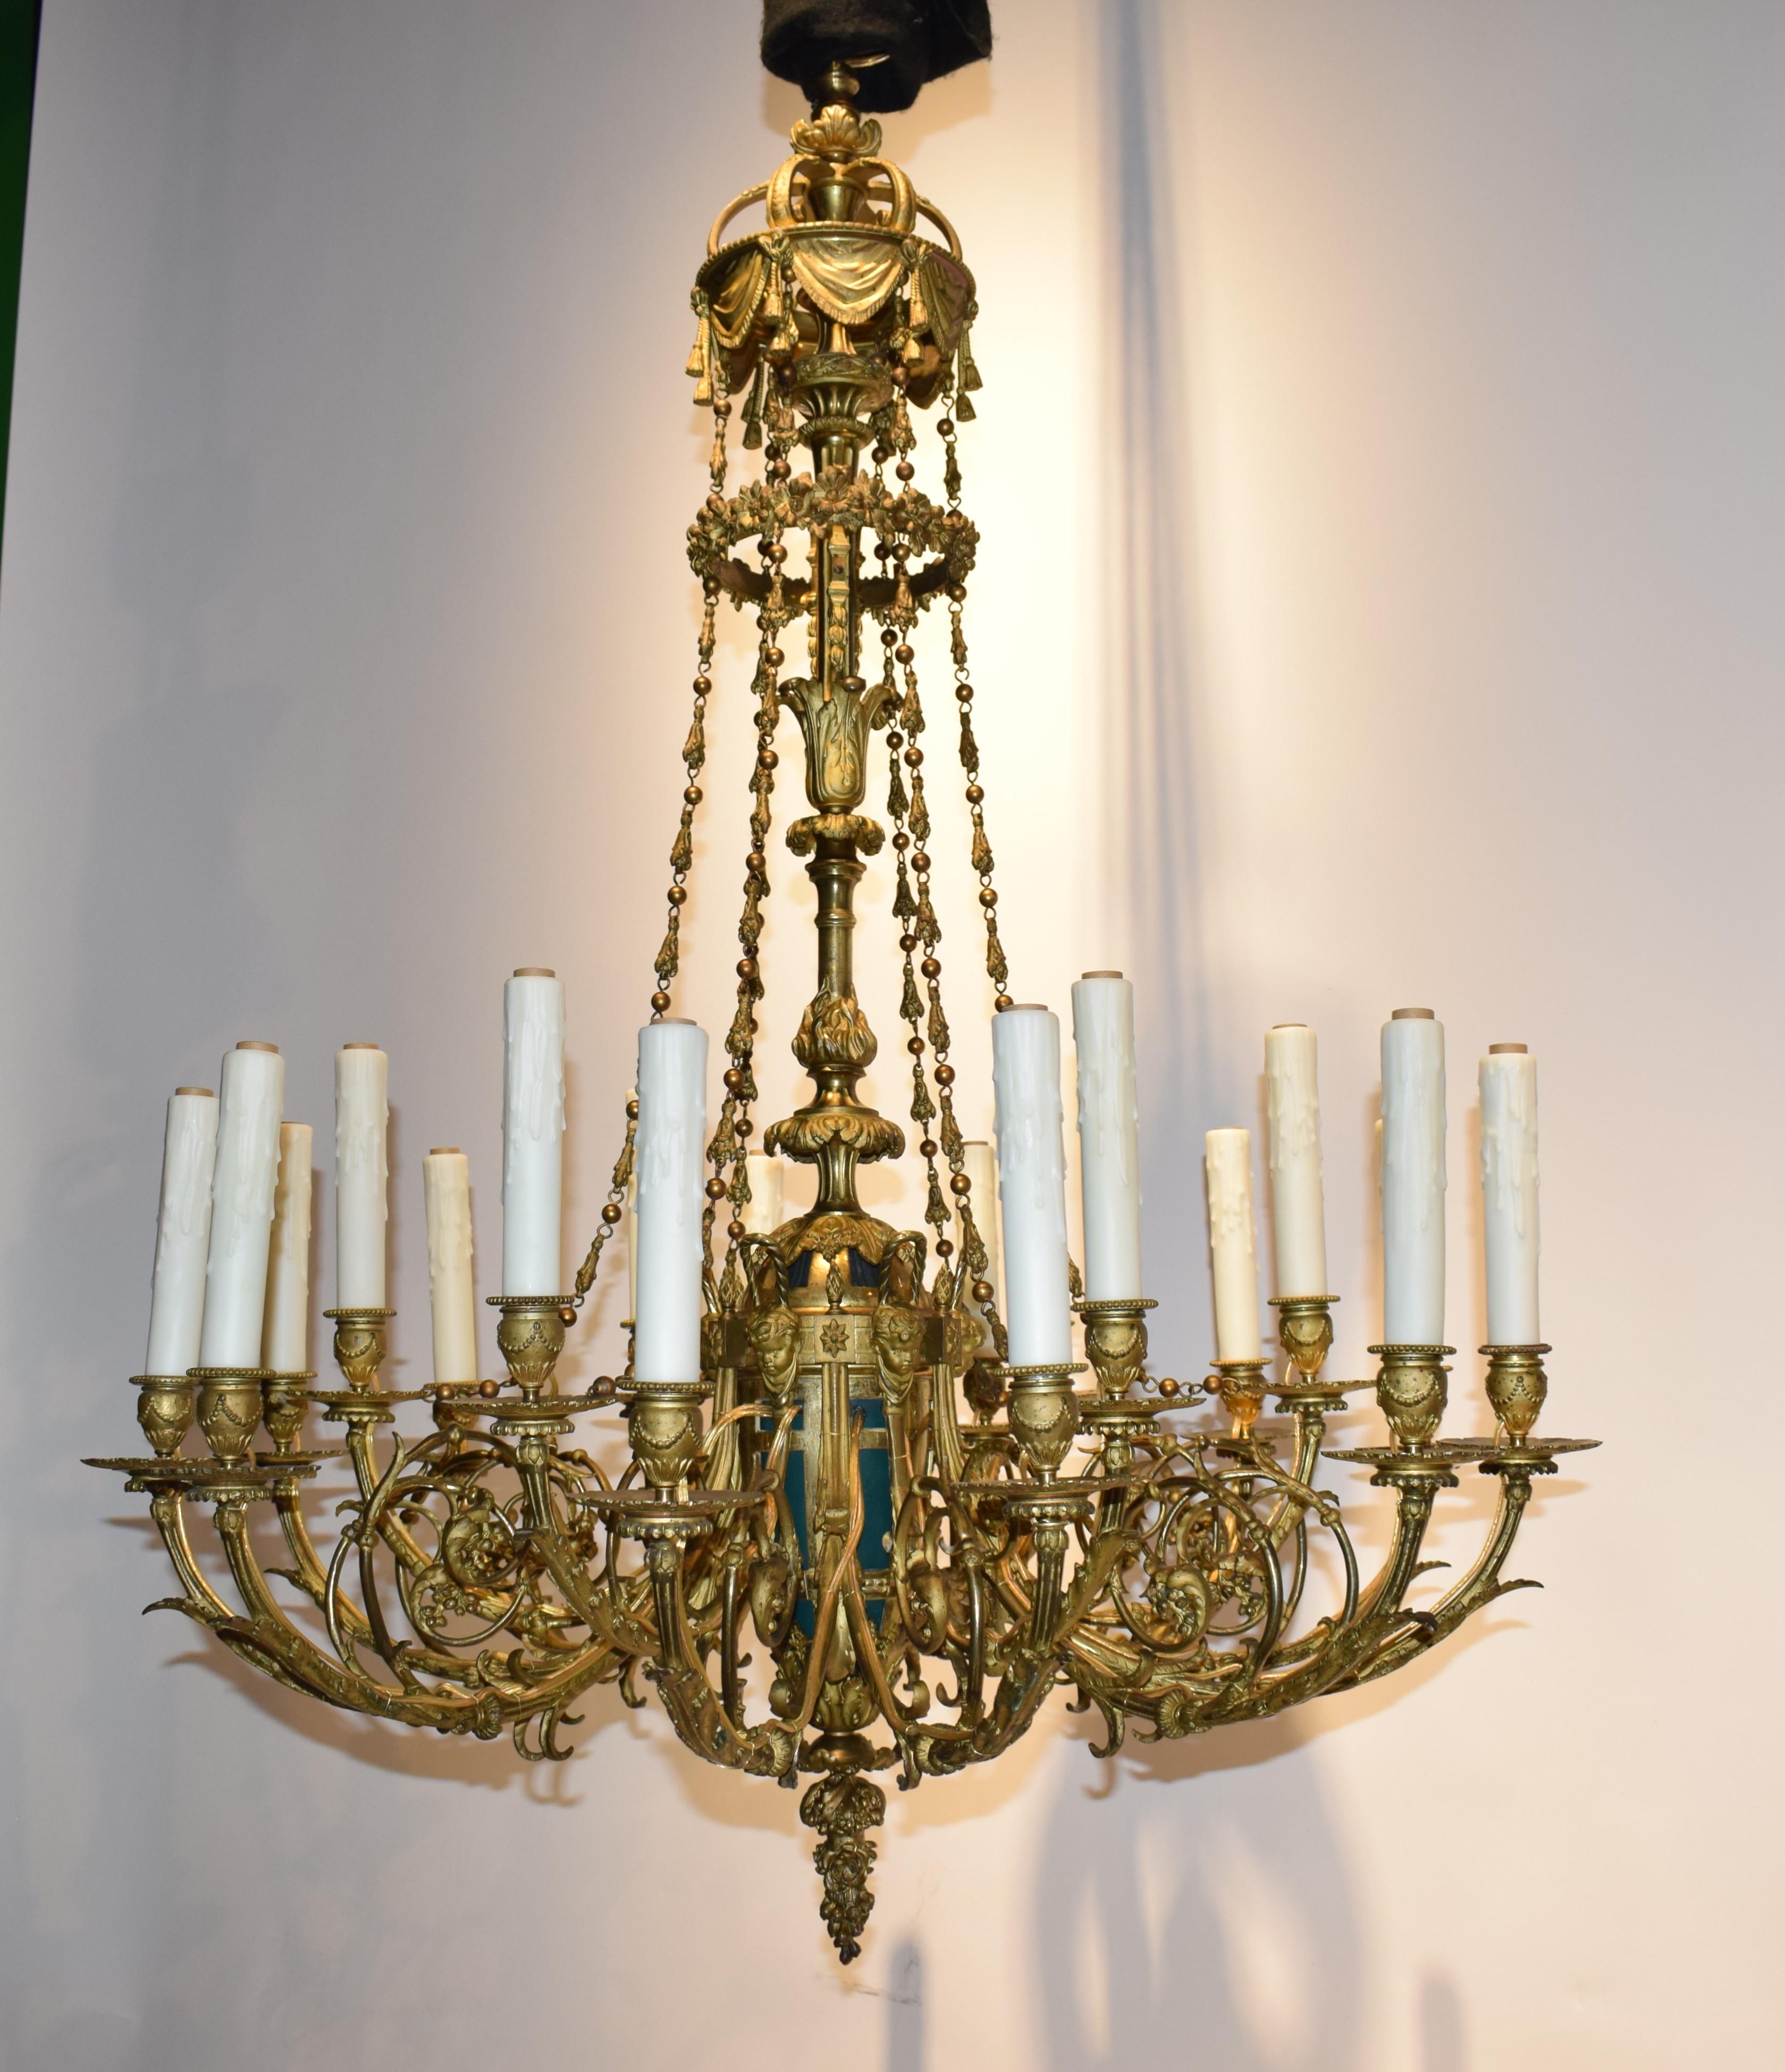 Außergewöhnlicher Kronleuchter aus vergoldeter Bronze ursprünglich für Kerzen (jetzt elektrifiziert)
Frankreich, um 1880. 18 Lichter. 
Abmessungen: Höhe 46